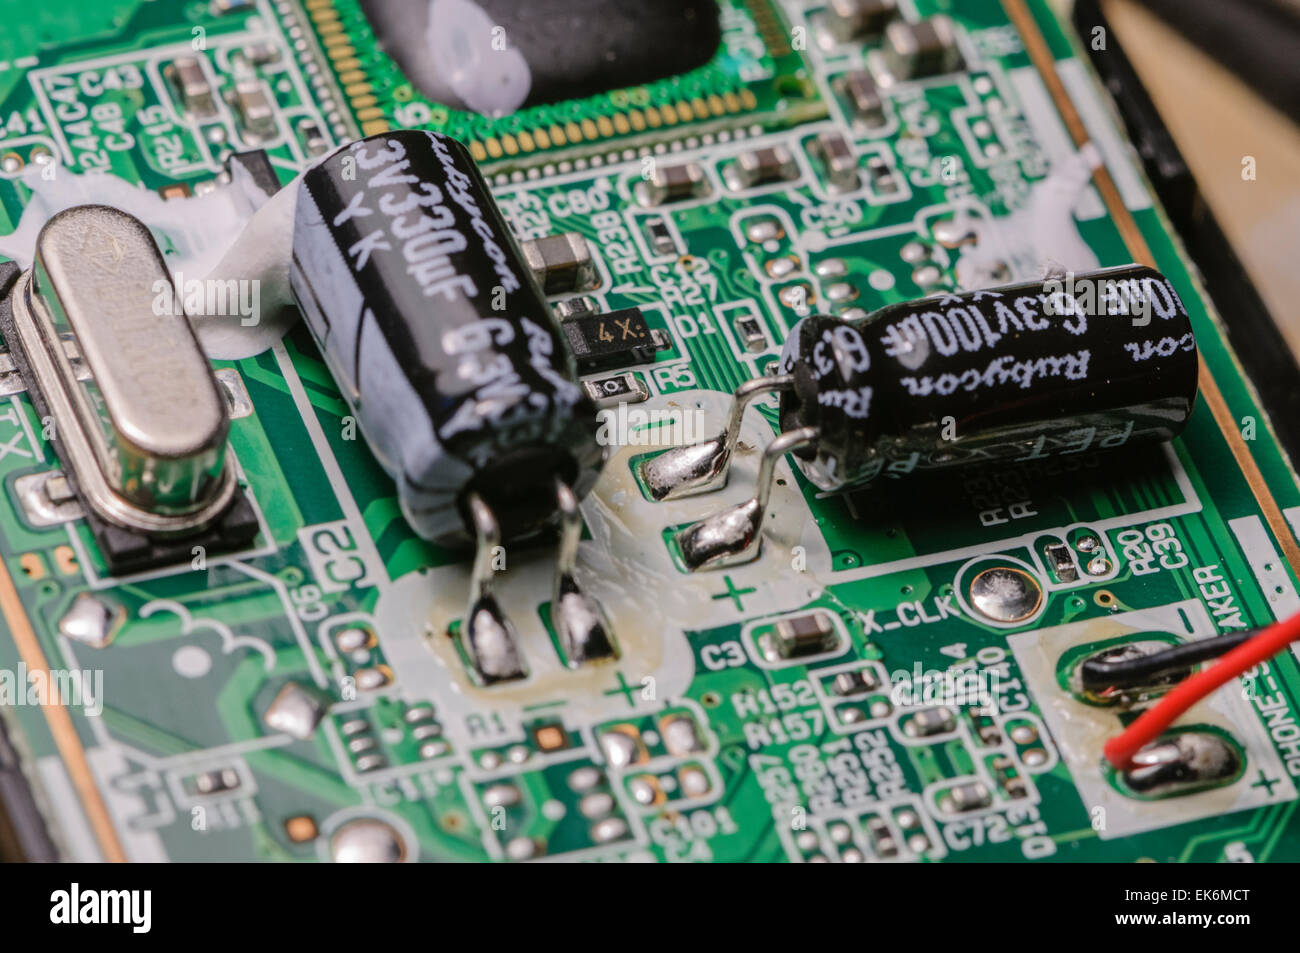 Condensatori, resistori e un cristallo su una scheda a circuito stampato Foto Stock